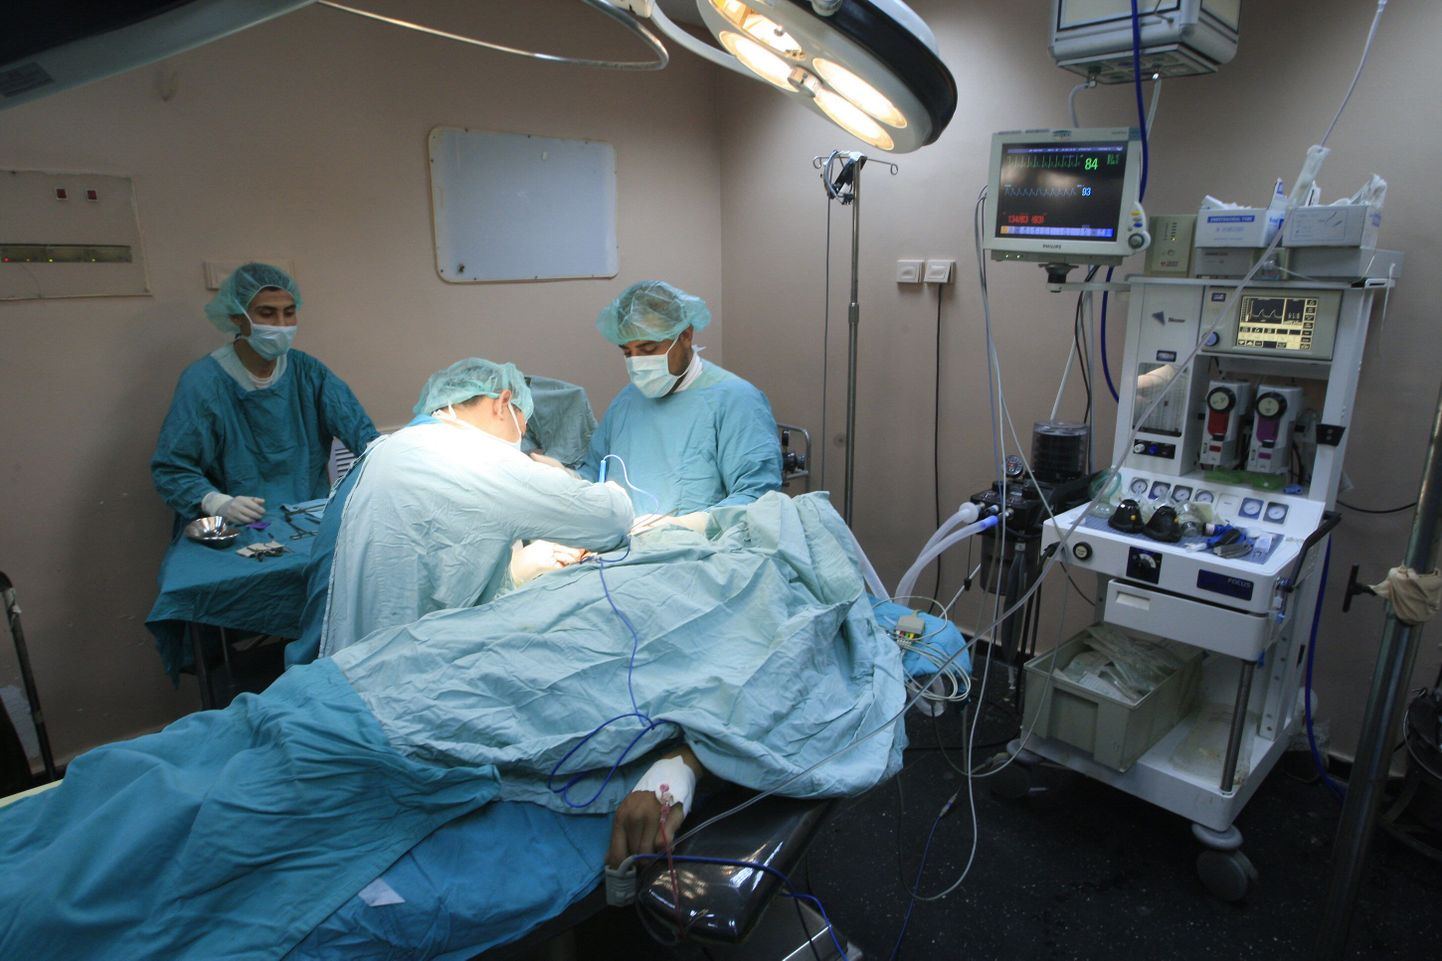 Itaalias tegid kirurgid suuremate kindlustusrahade nimel mõttetuid ja patsiente ohustavaid operatsioone